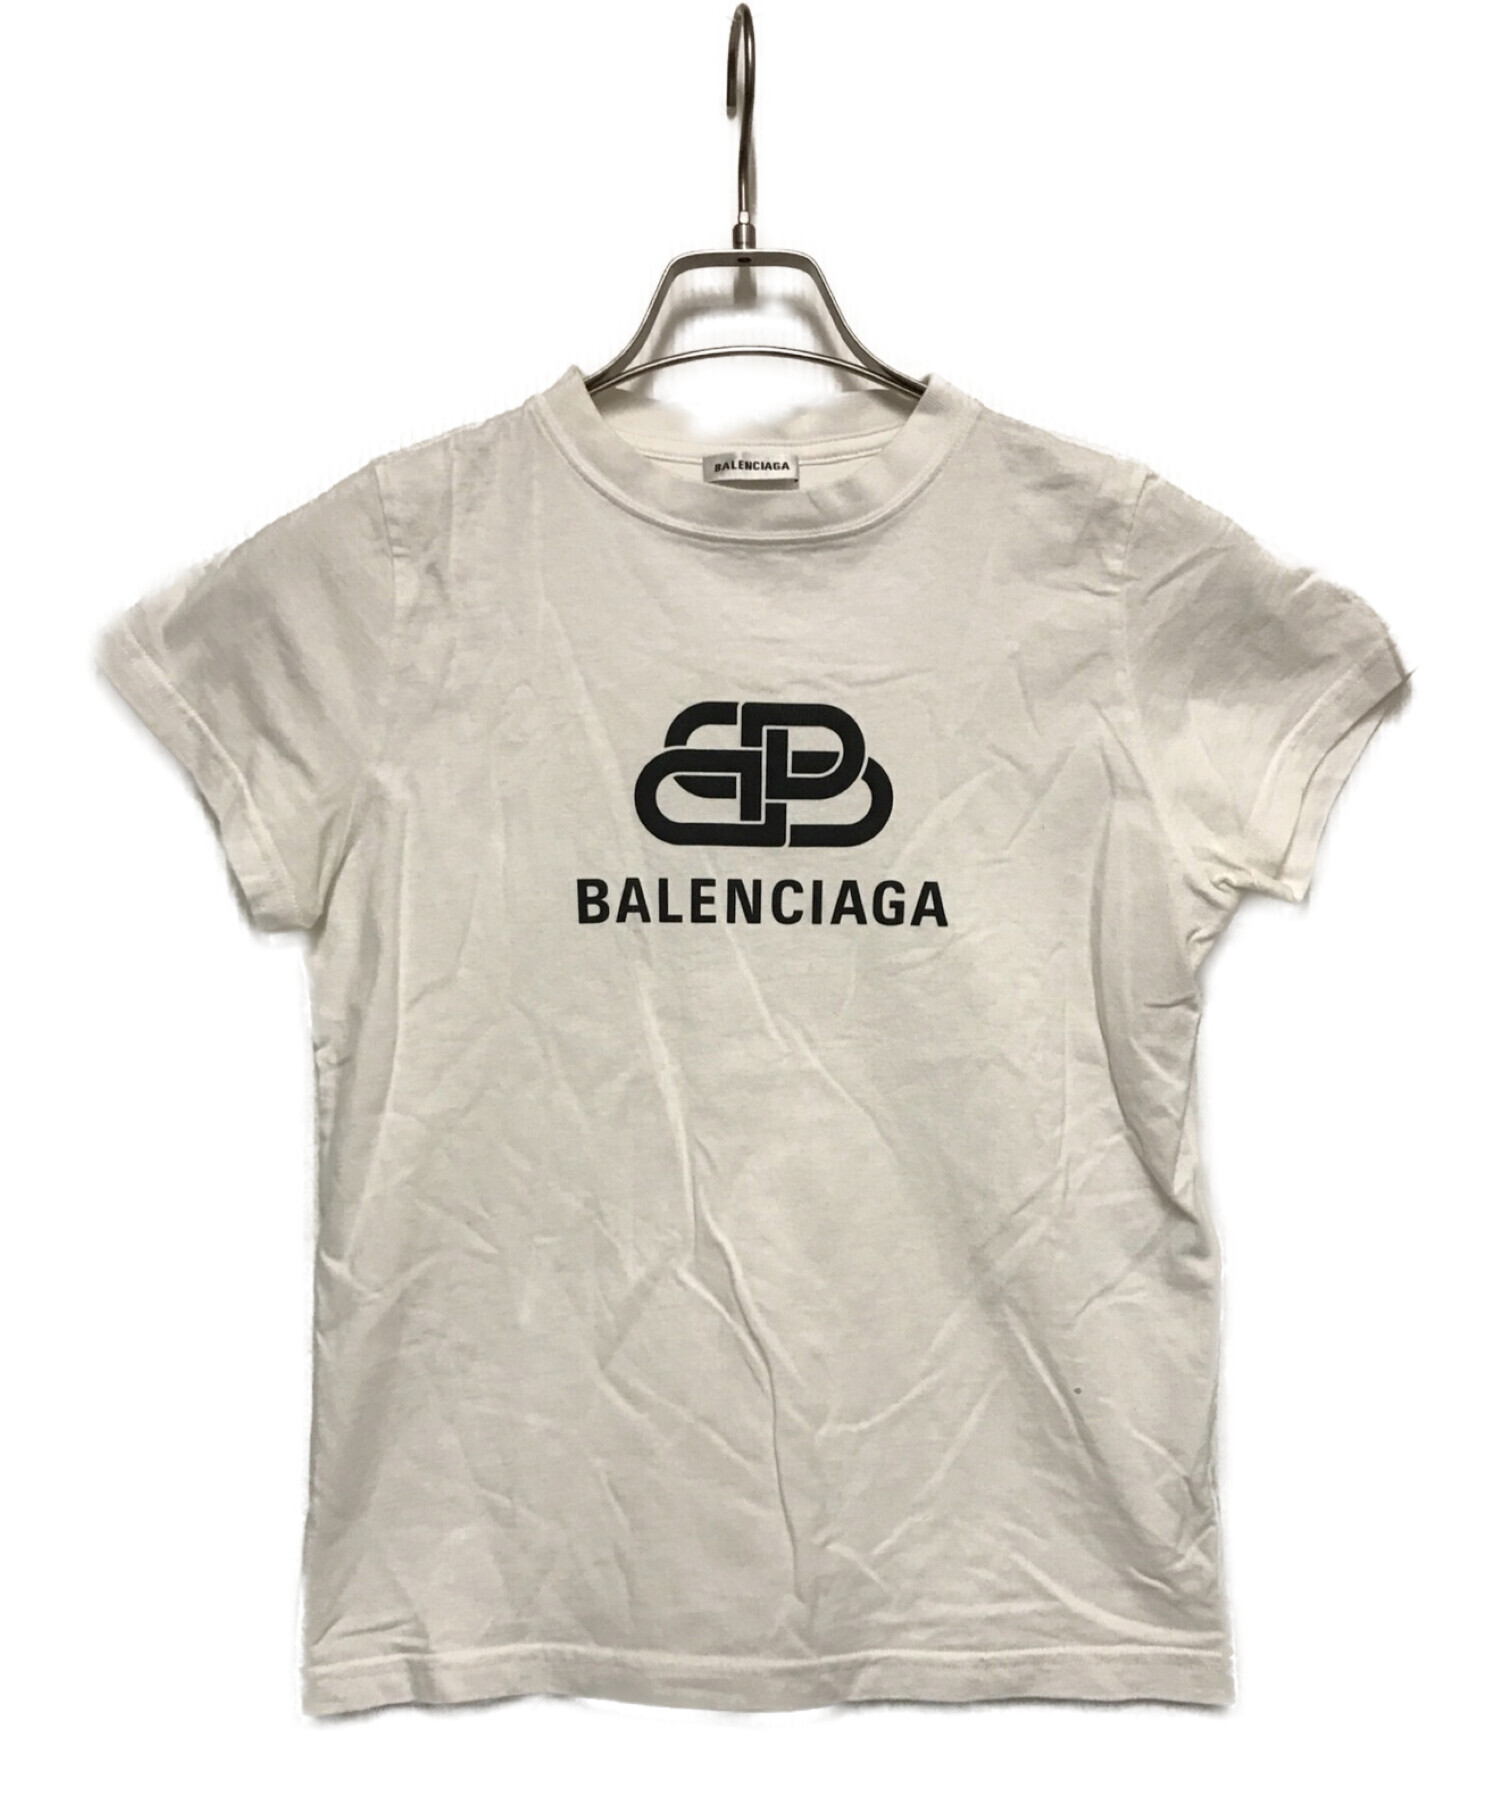 BALENCIAGA バレンシアガ ロゴ Tシャツ BB 半袖 カットソー XS